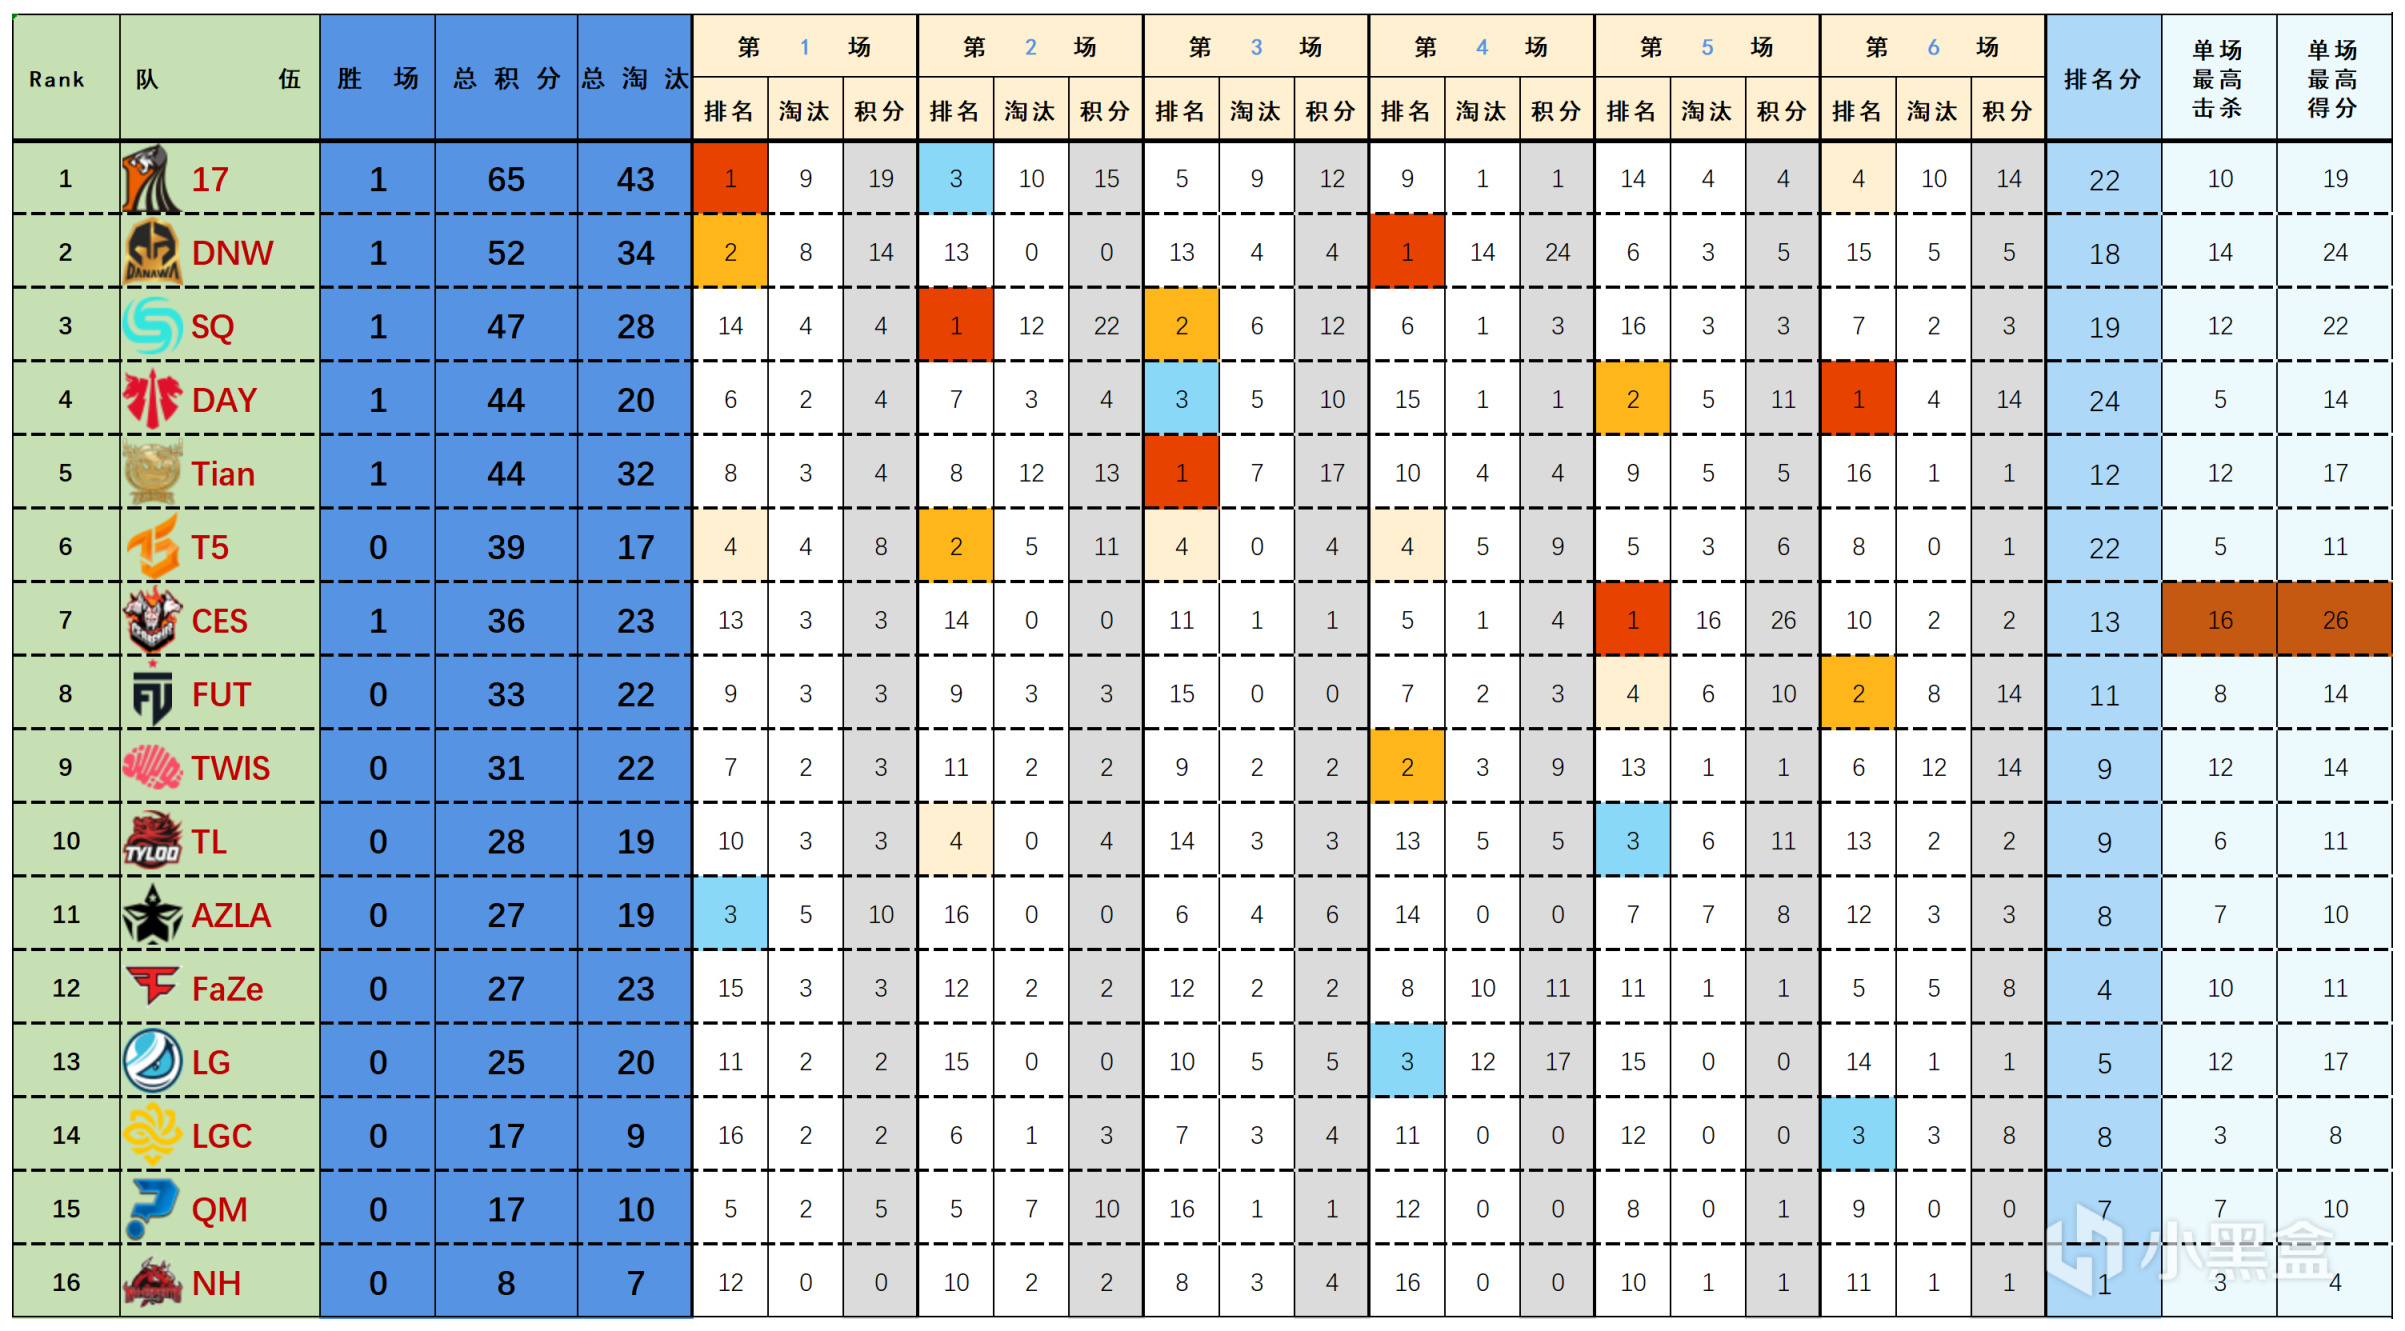 【數據流】23PGC勝者組D1,17 65分今日第一,DNW_seoul戰神14淘汰-第1張